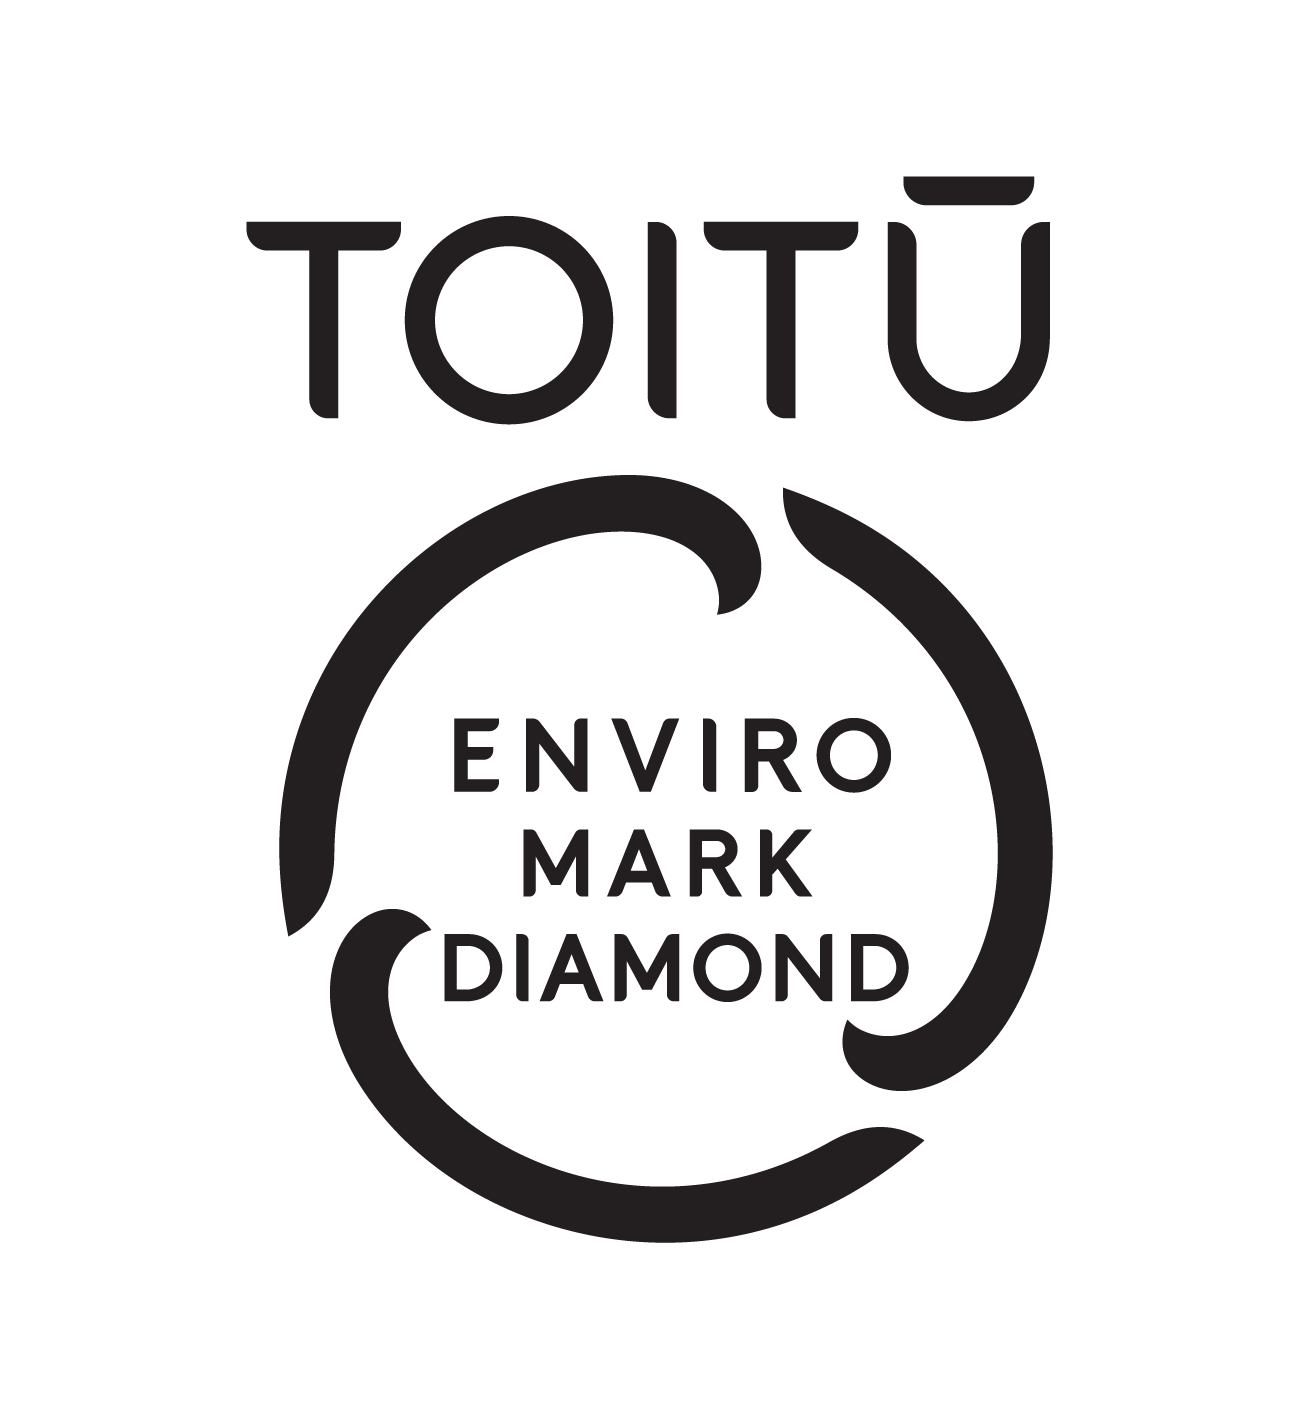 Toitu_enviromark_Diamond